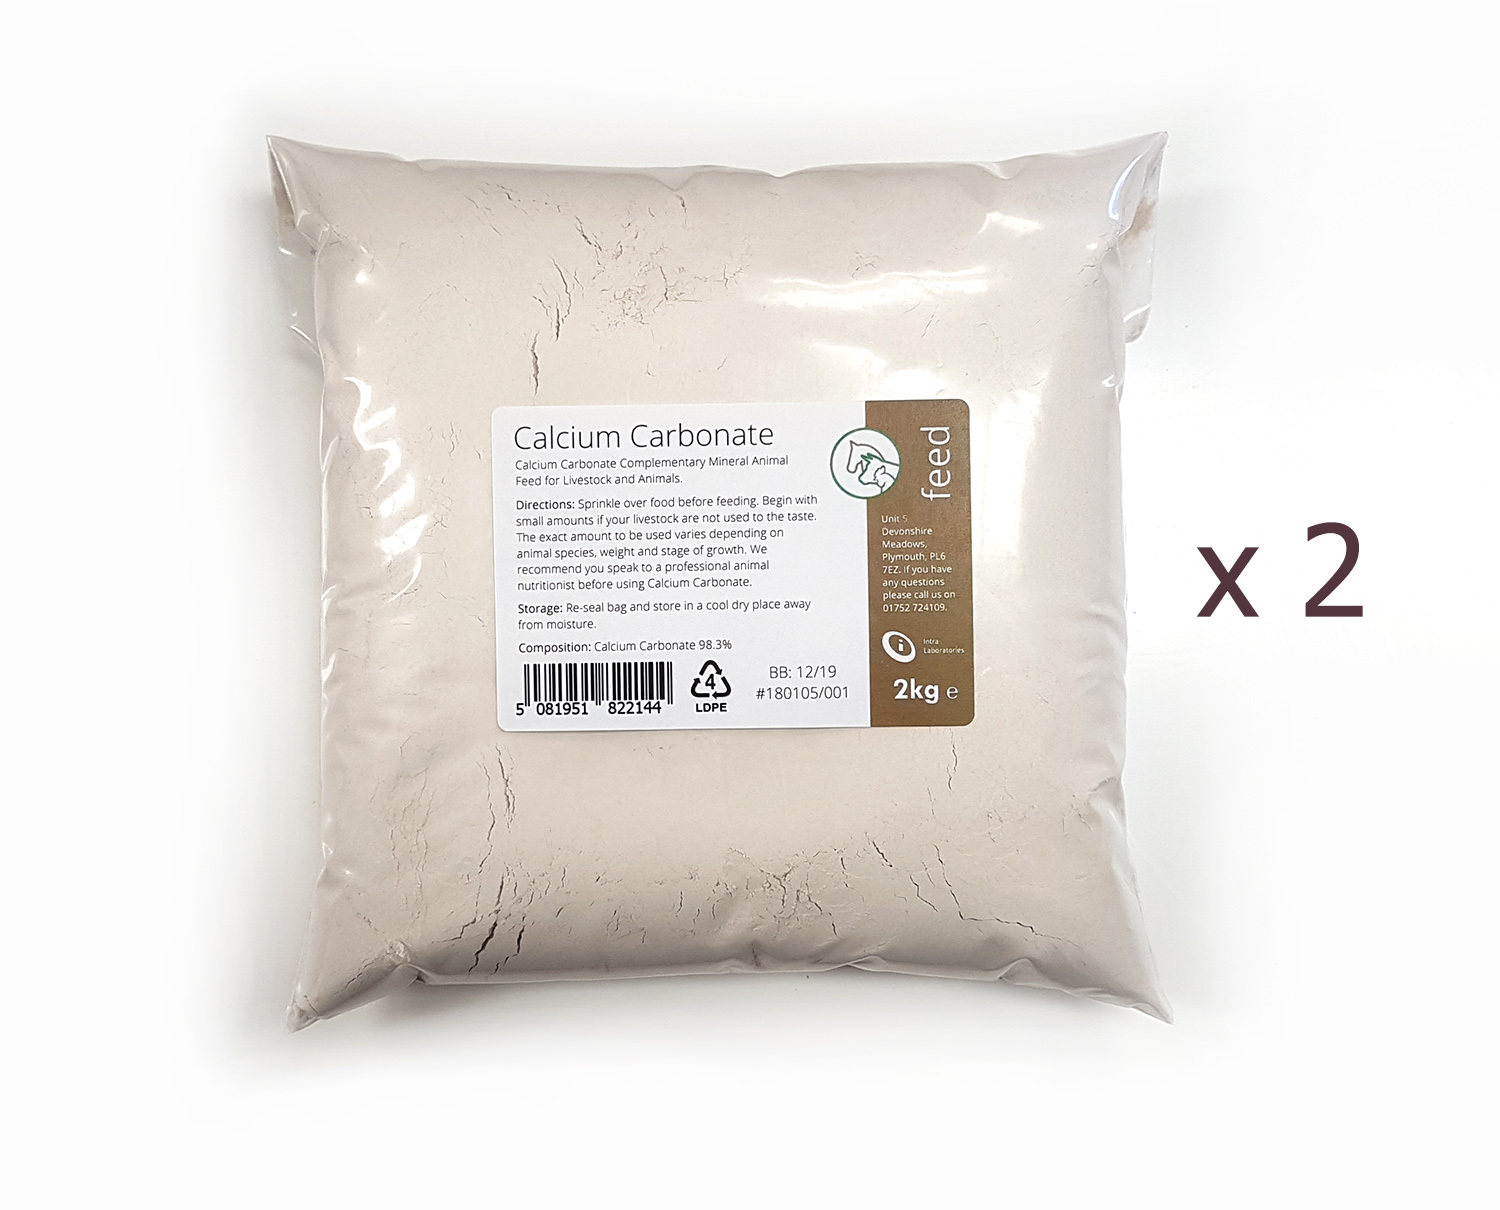 4kg - Calcium Carbonate